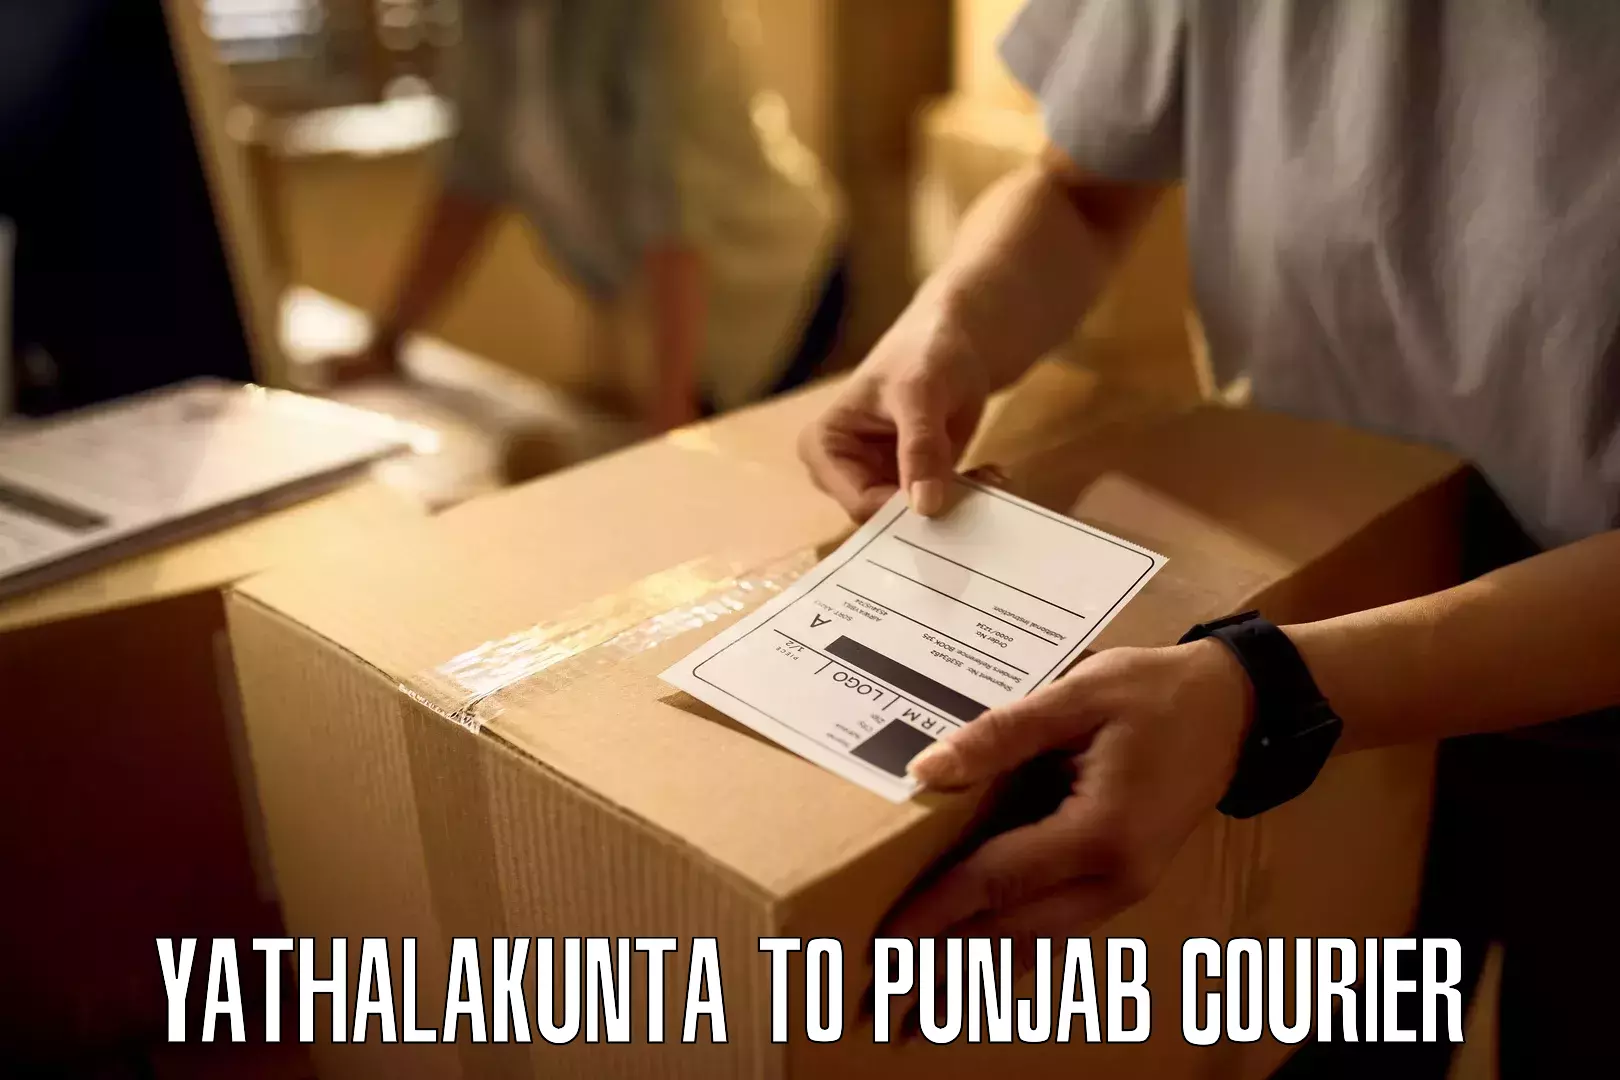 Expedited shipping methods Yathalakunta to Punjab